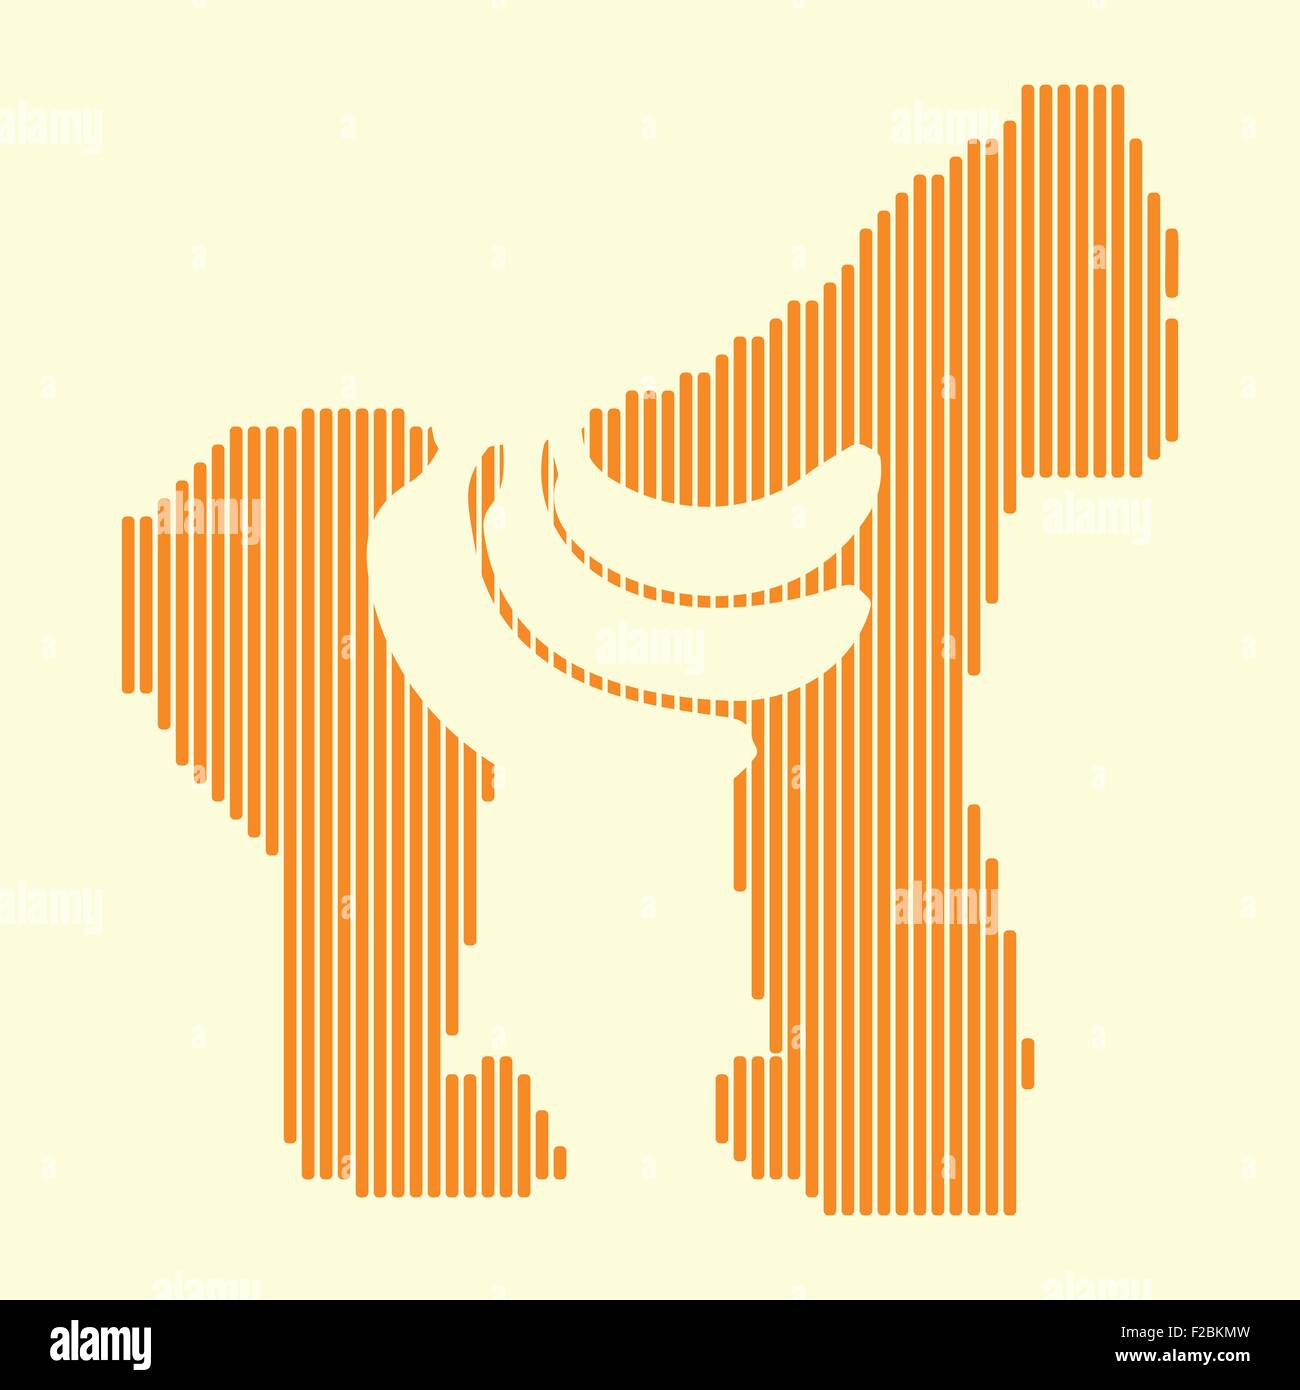 Les lignes de demi-teintes de l'illustration stylisée le gorille et banane Illustration de Vecteur